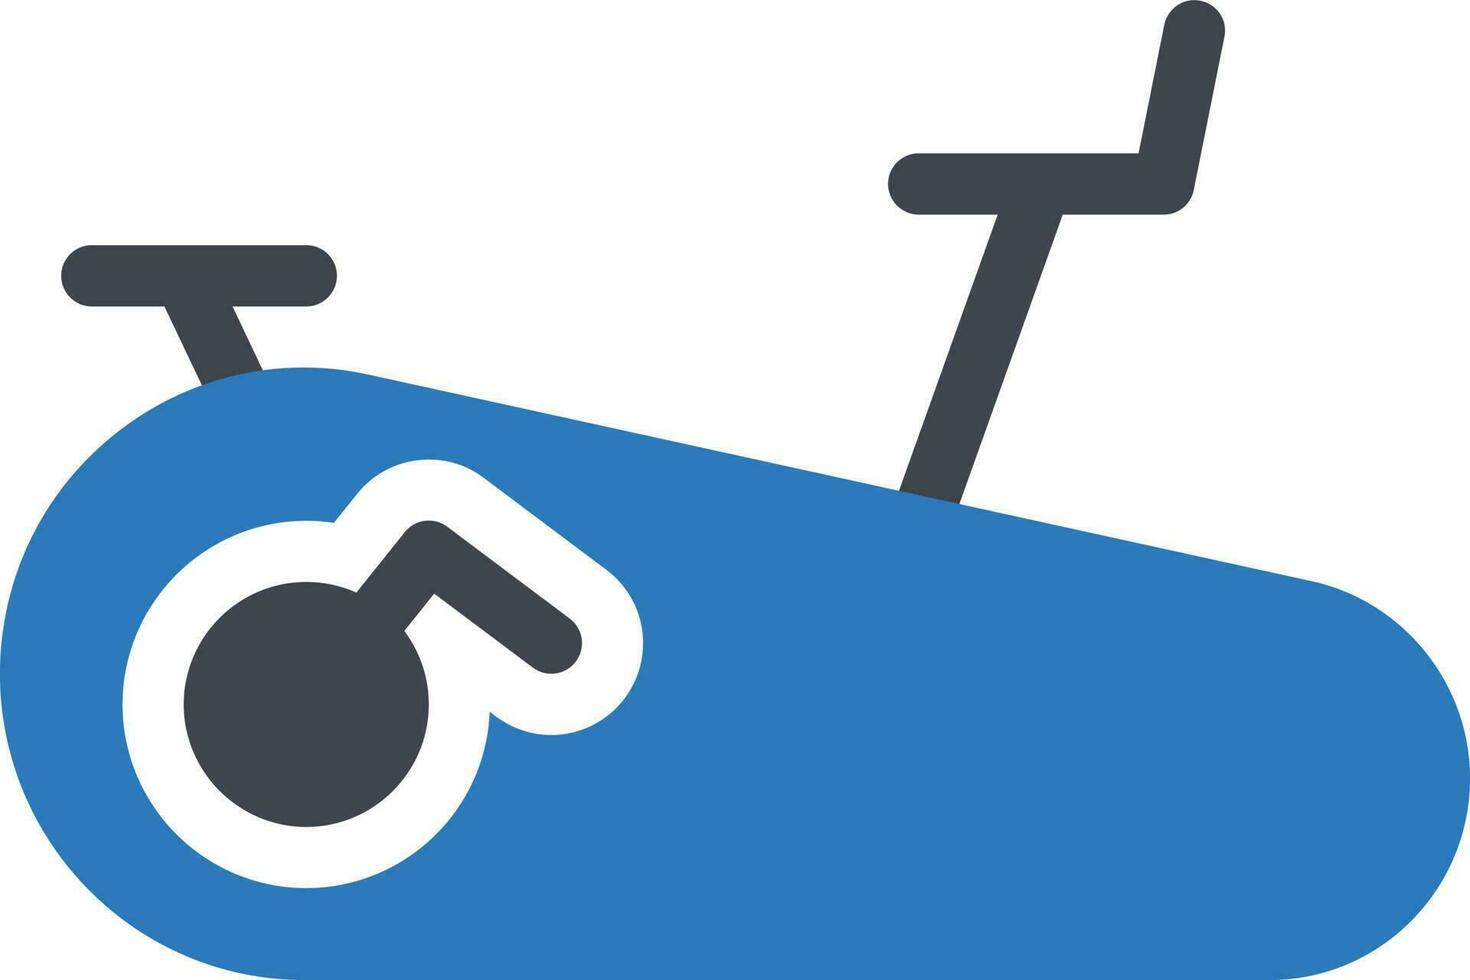 illustrazione vettoriale in bicicletta su uno sfondo. simboli di qualità premium. icone vettoriali per il concetto e la progettazione grafica.